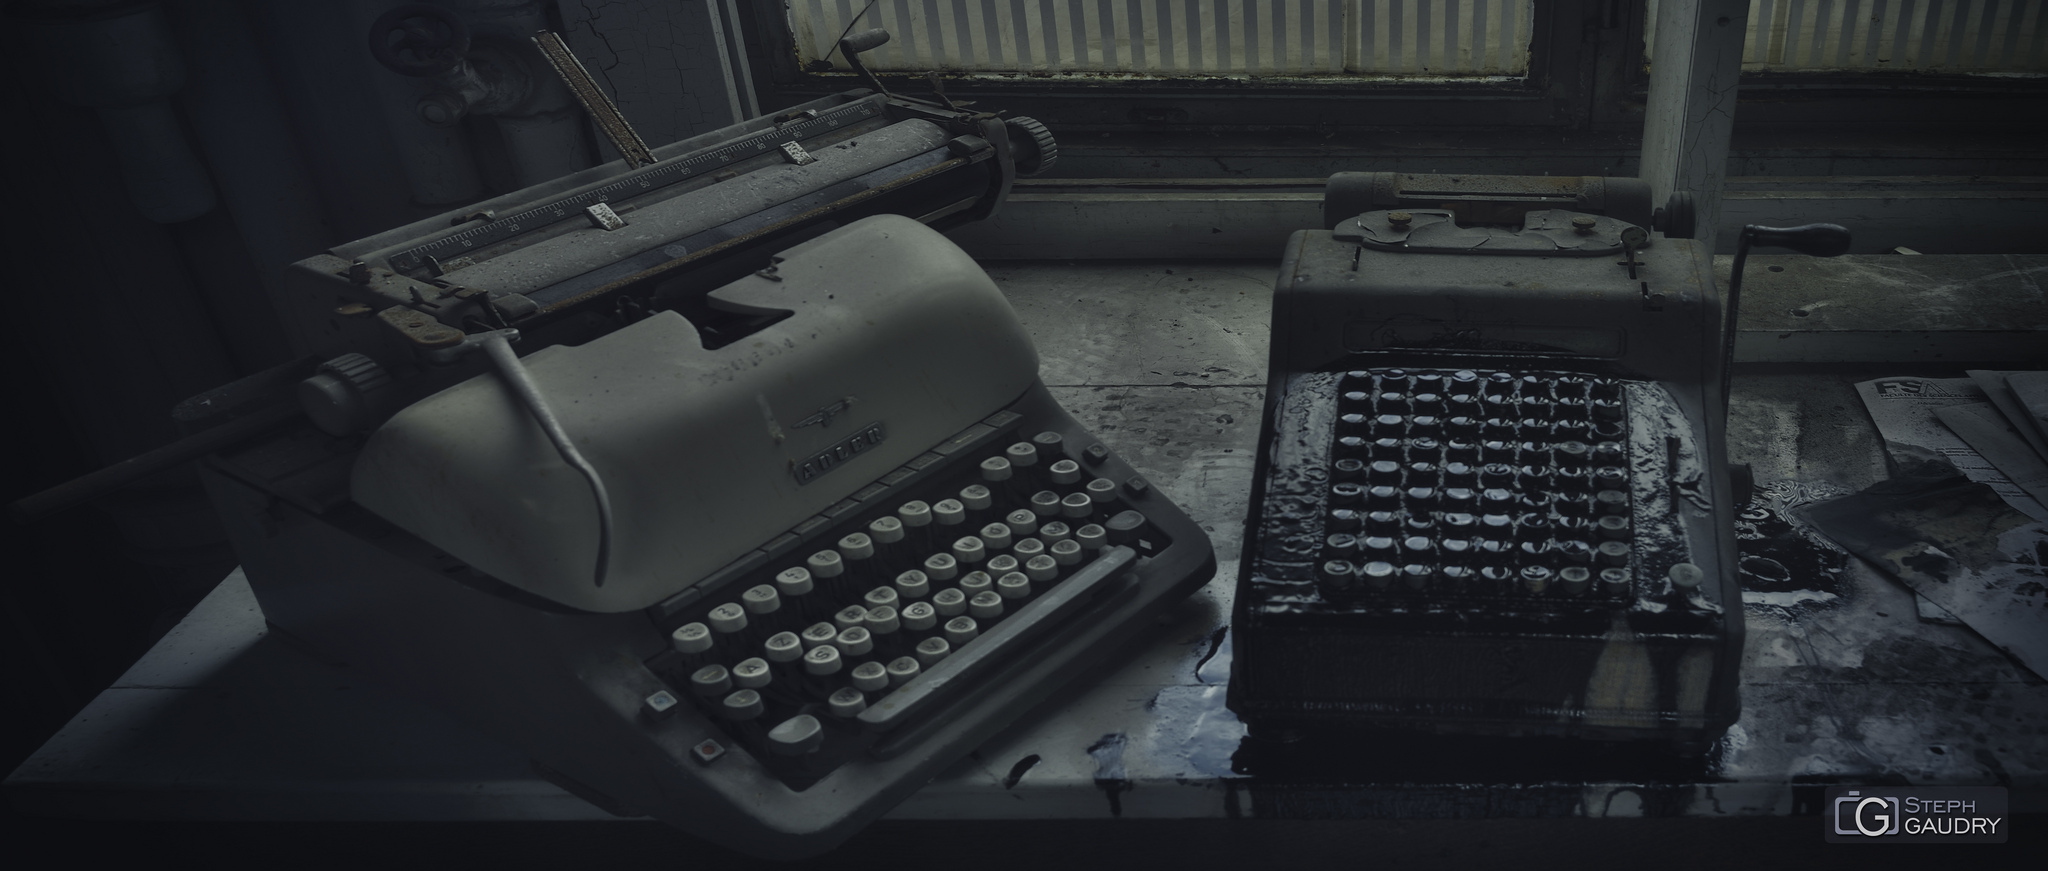 Adler typewriter [Click to start slideshow]